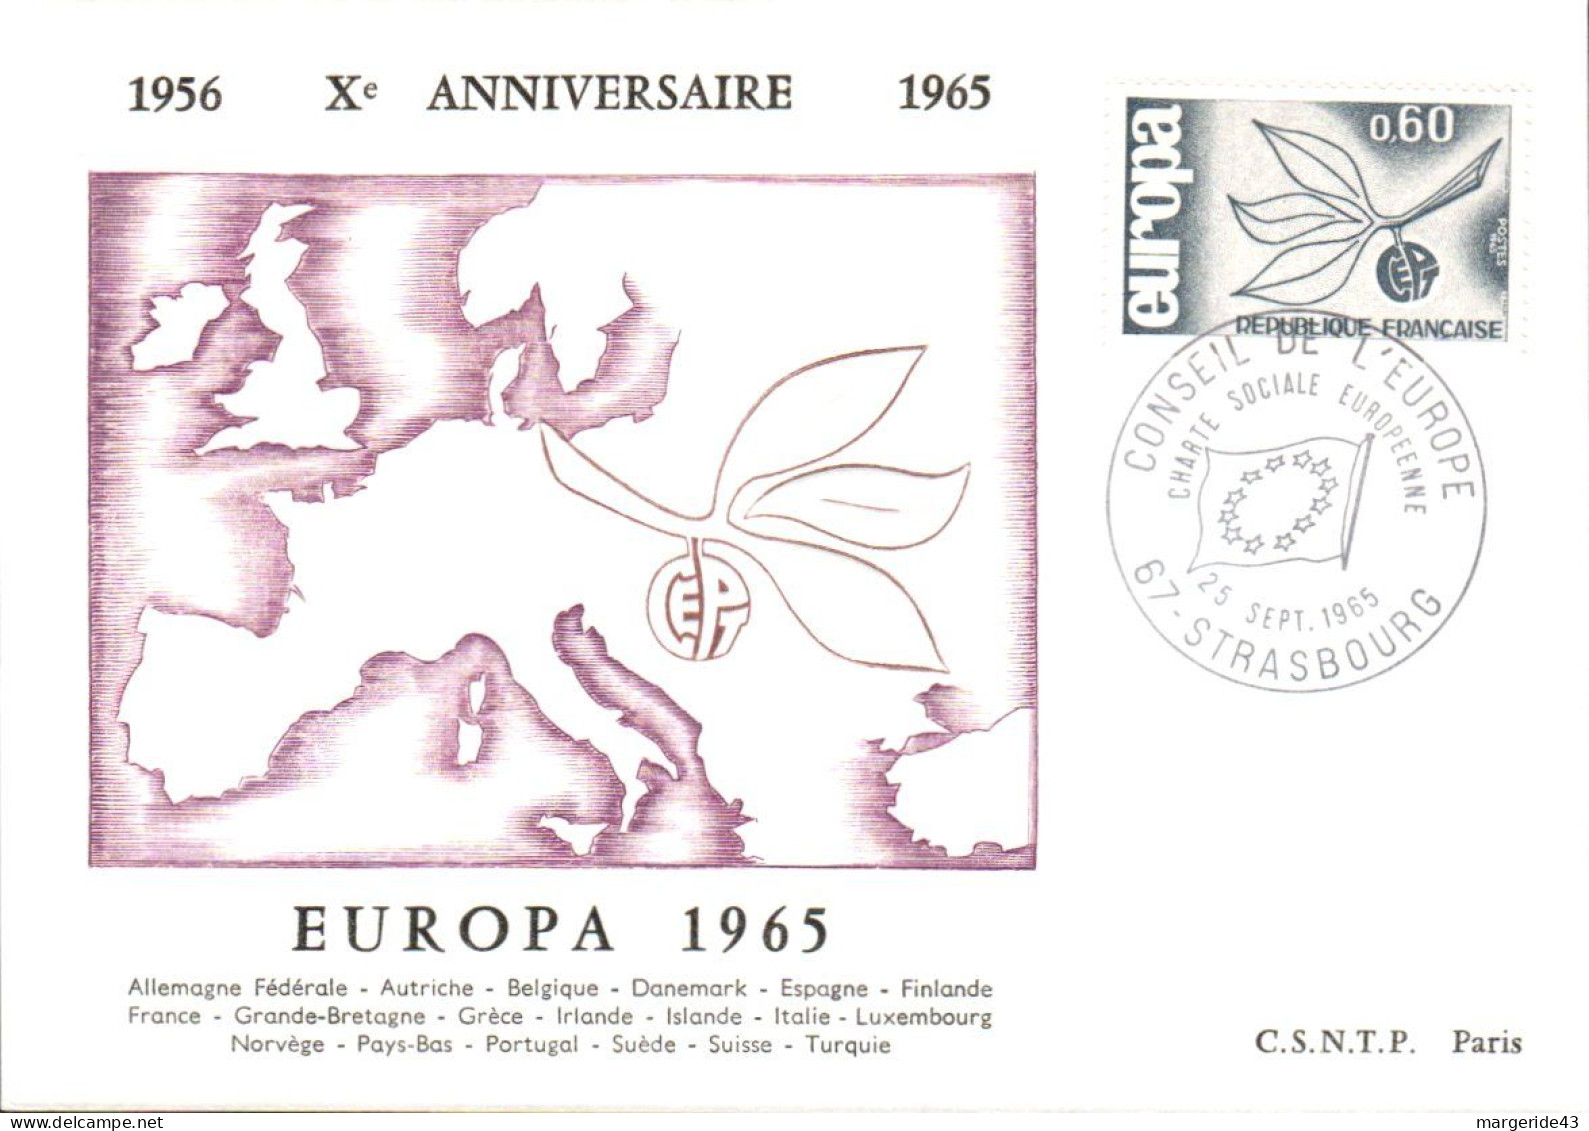 EUROPA 1965 CARTES MAXIMUM - 1965